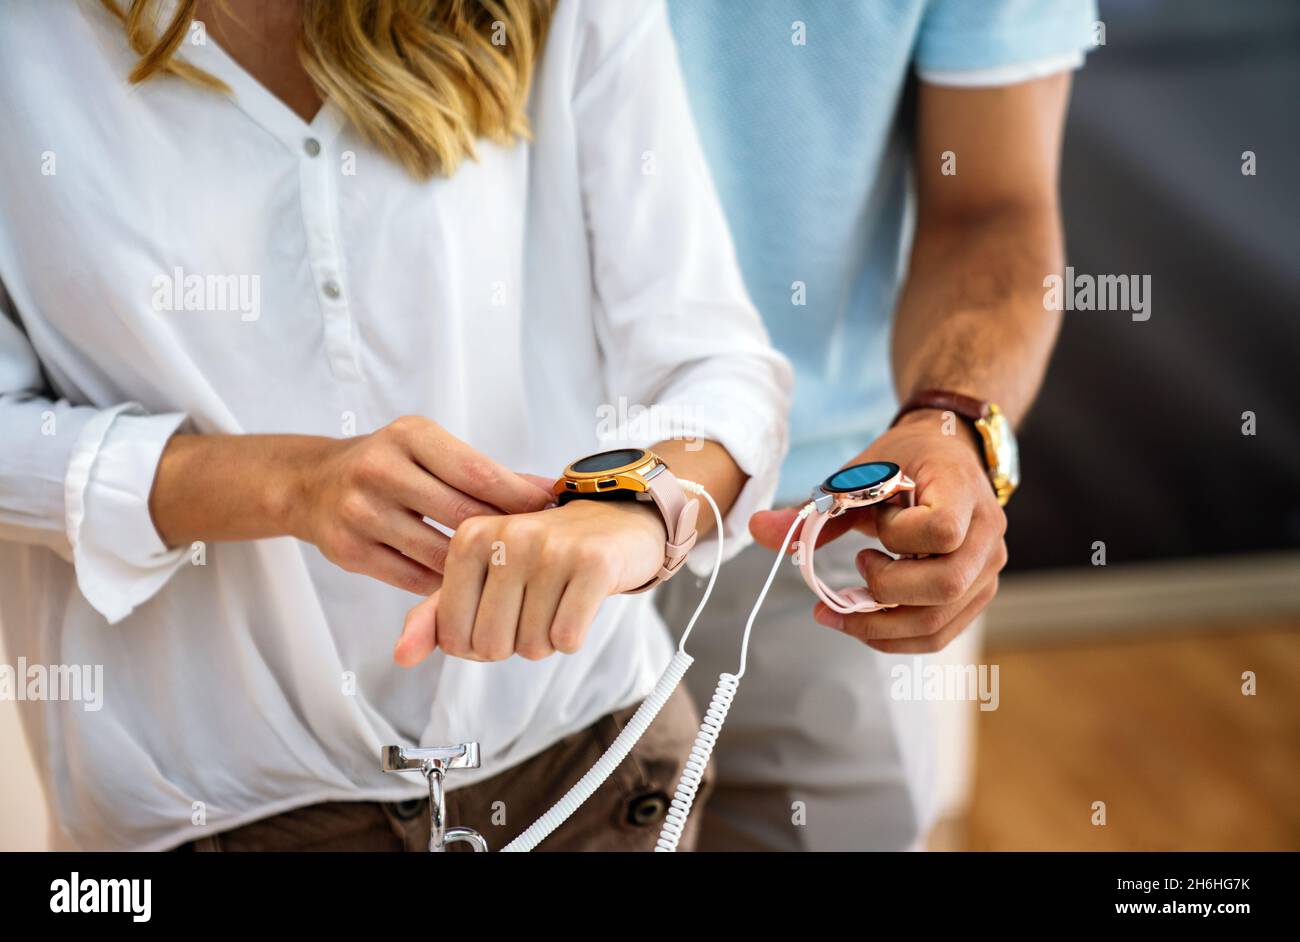 Tecnología People Smart Devices Concept. Feliz pareja comprar nuevo reloj inteligente en la tienda de tecnología. Foto de stock